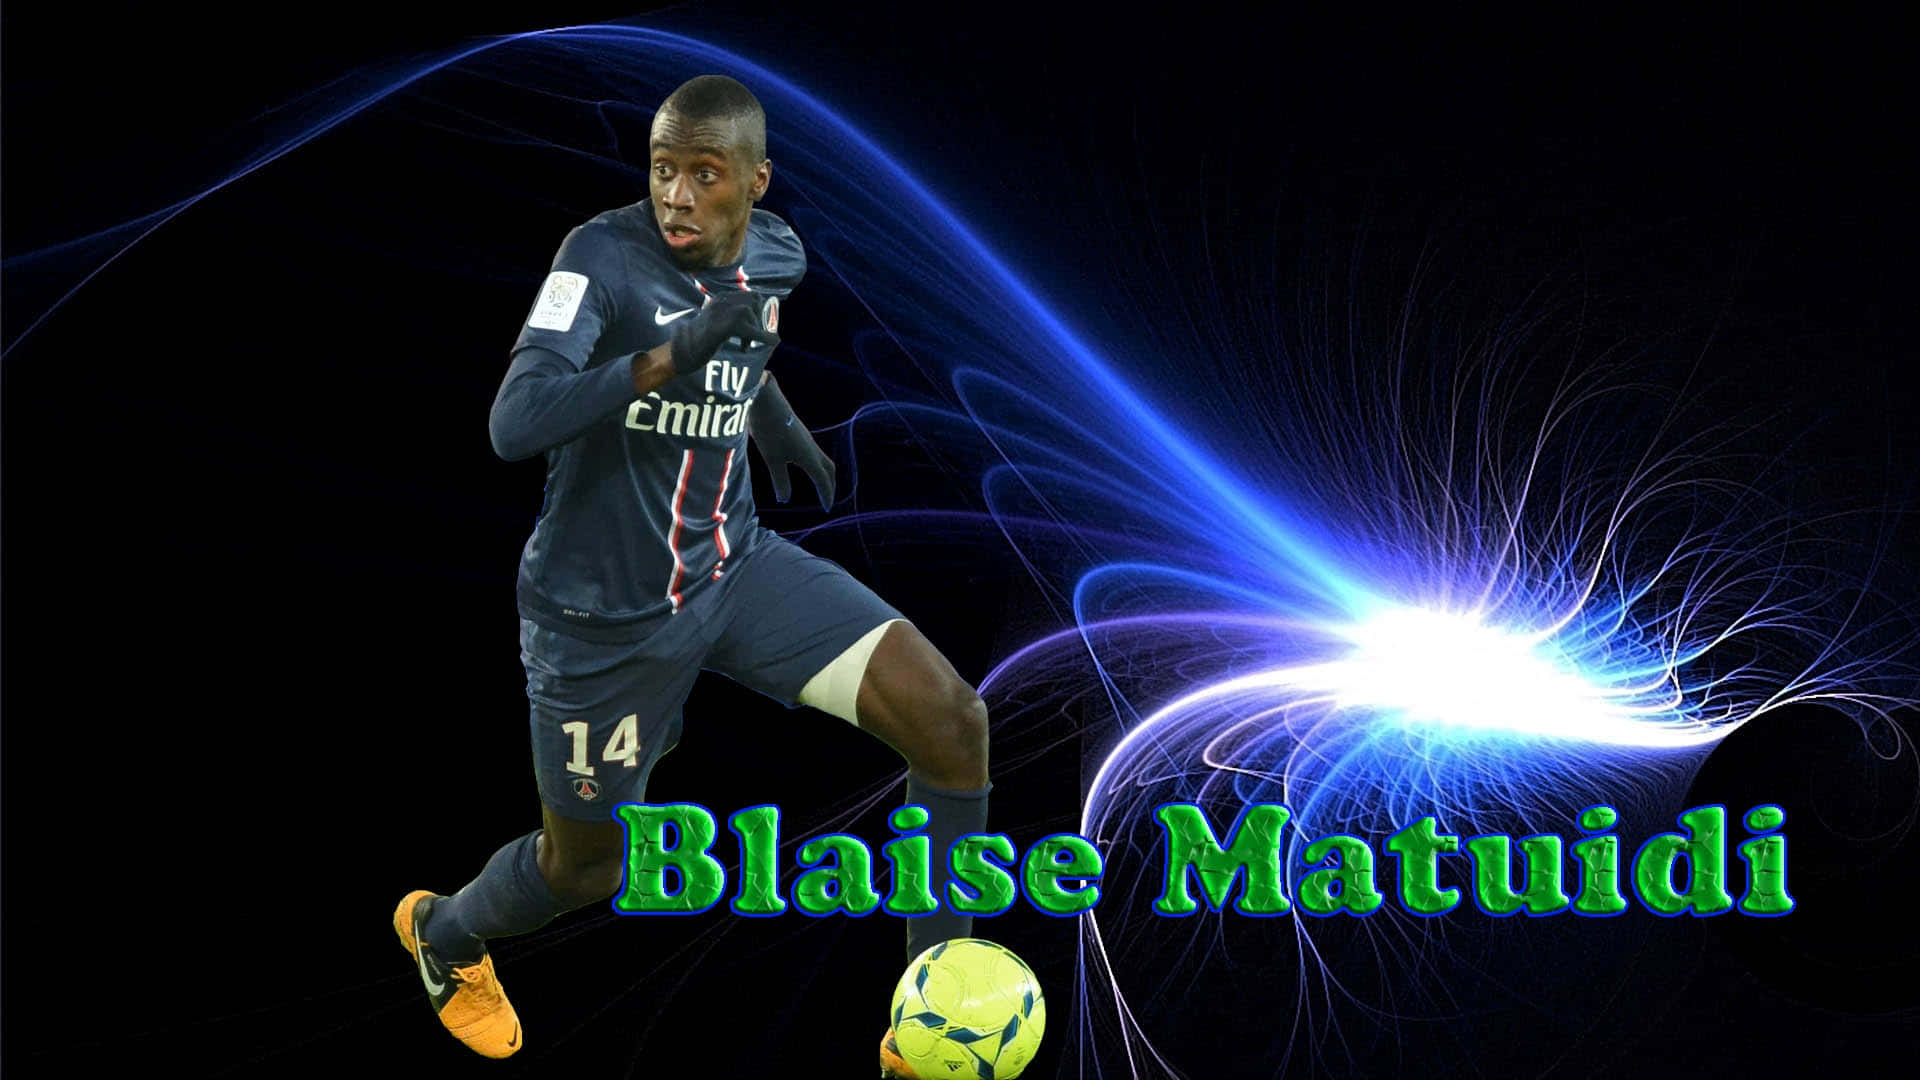 Fodboldspiller Blaise Matuidi-fanart baggrund Wallpaper